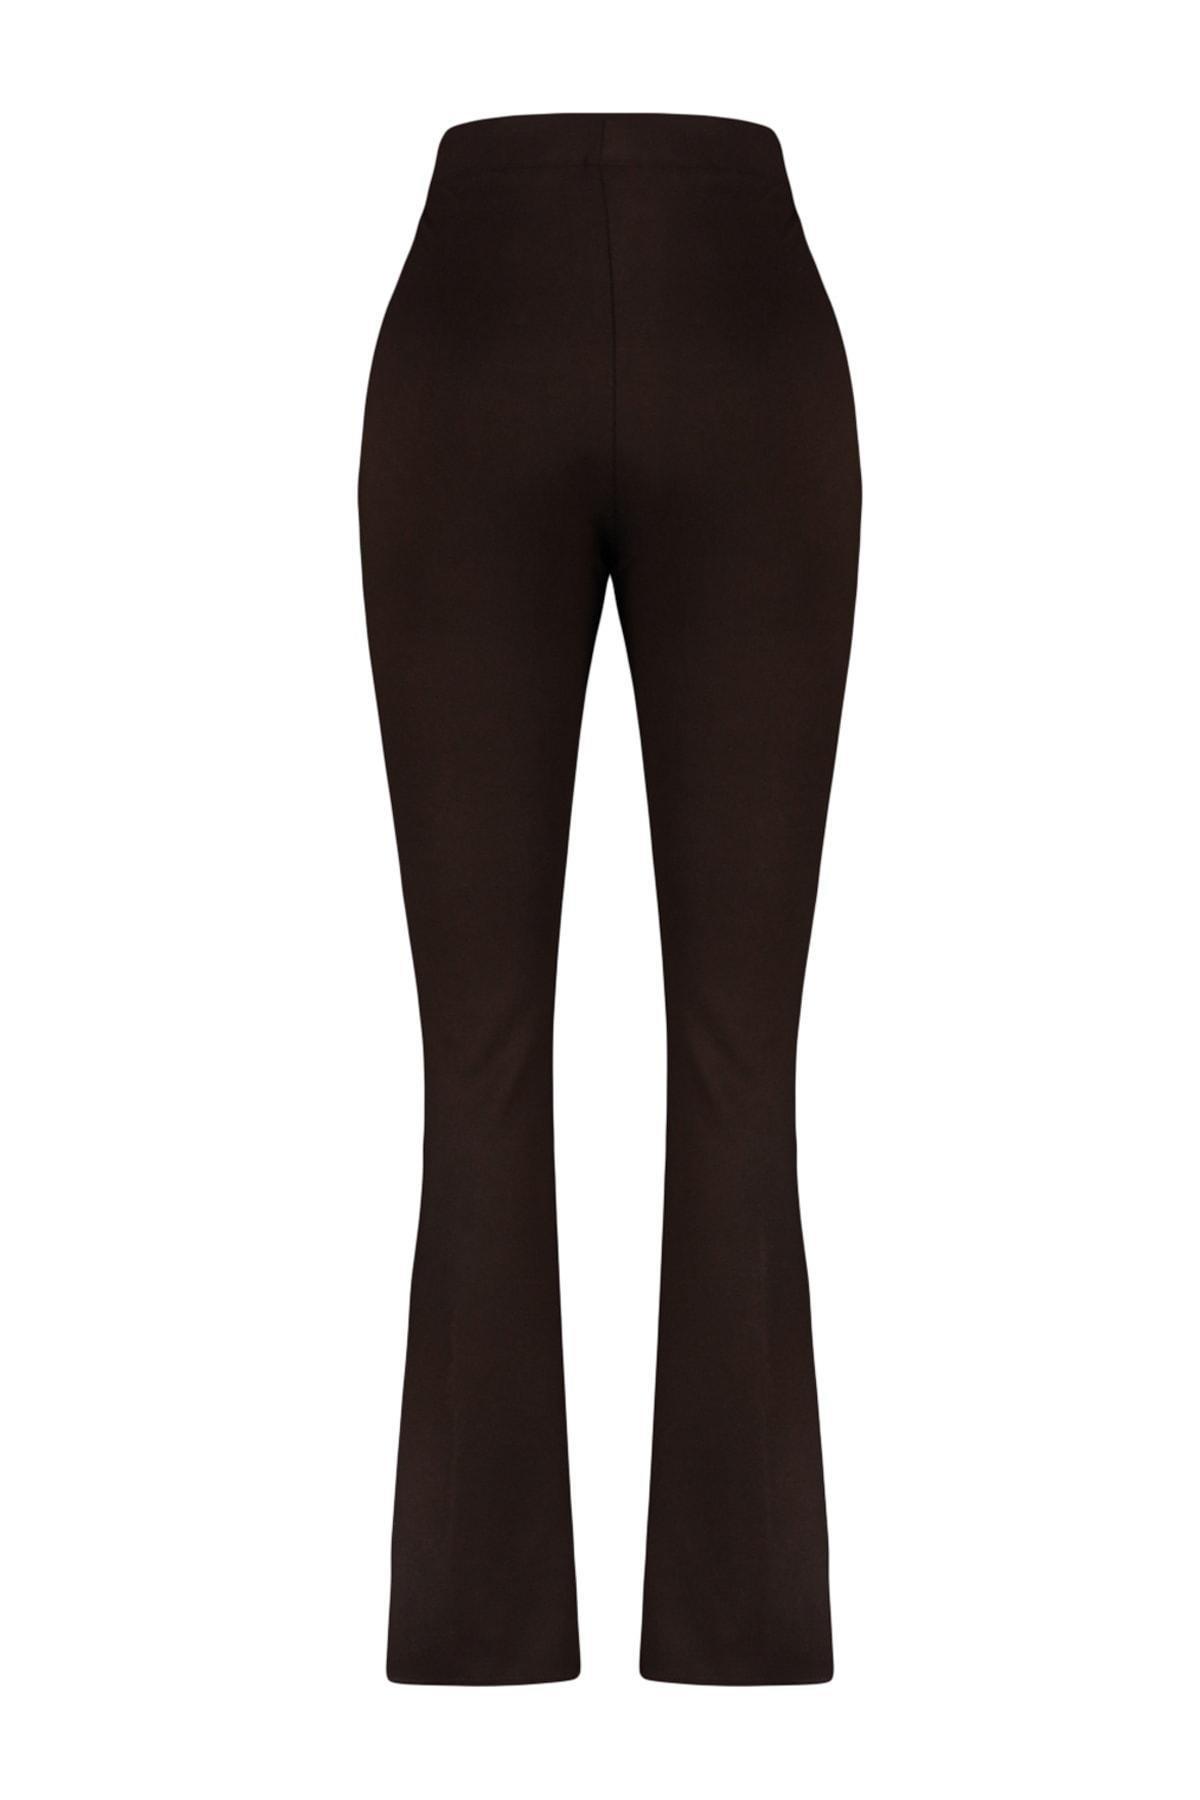 Trendyol - Brown Bootcut Plus Size Pants